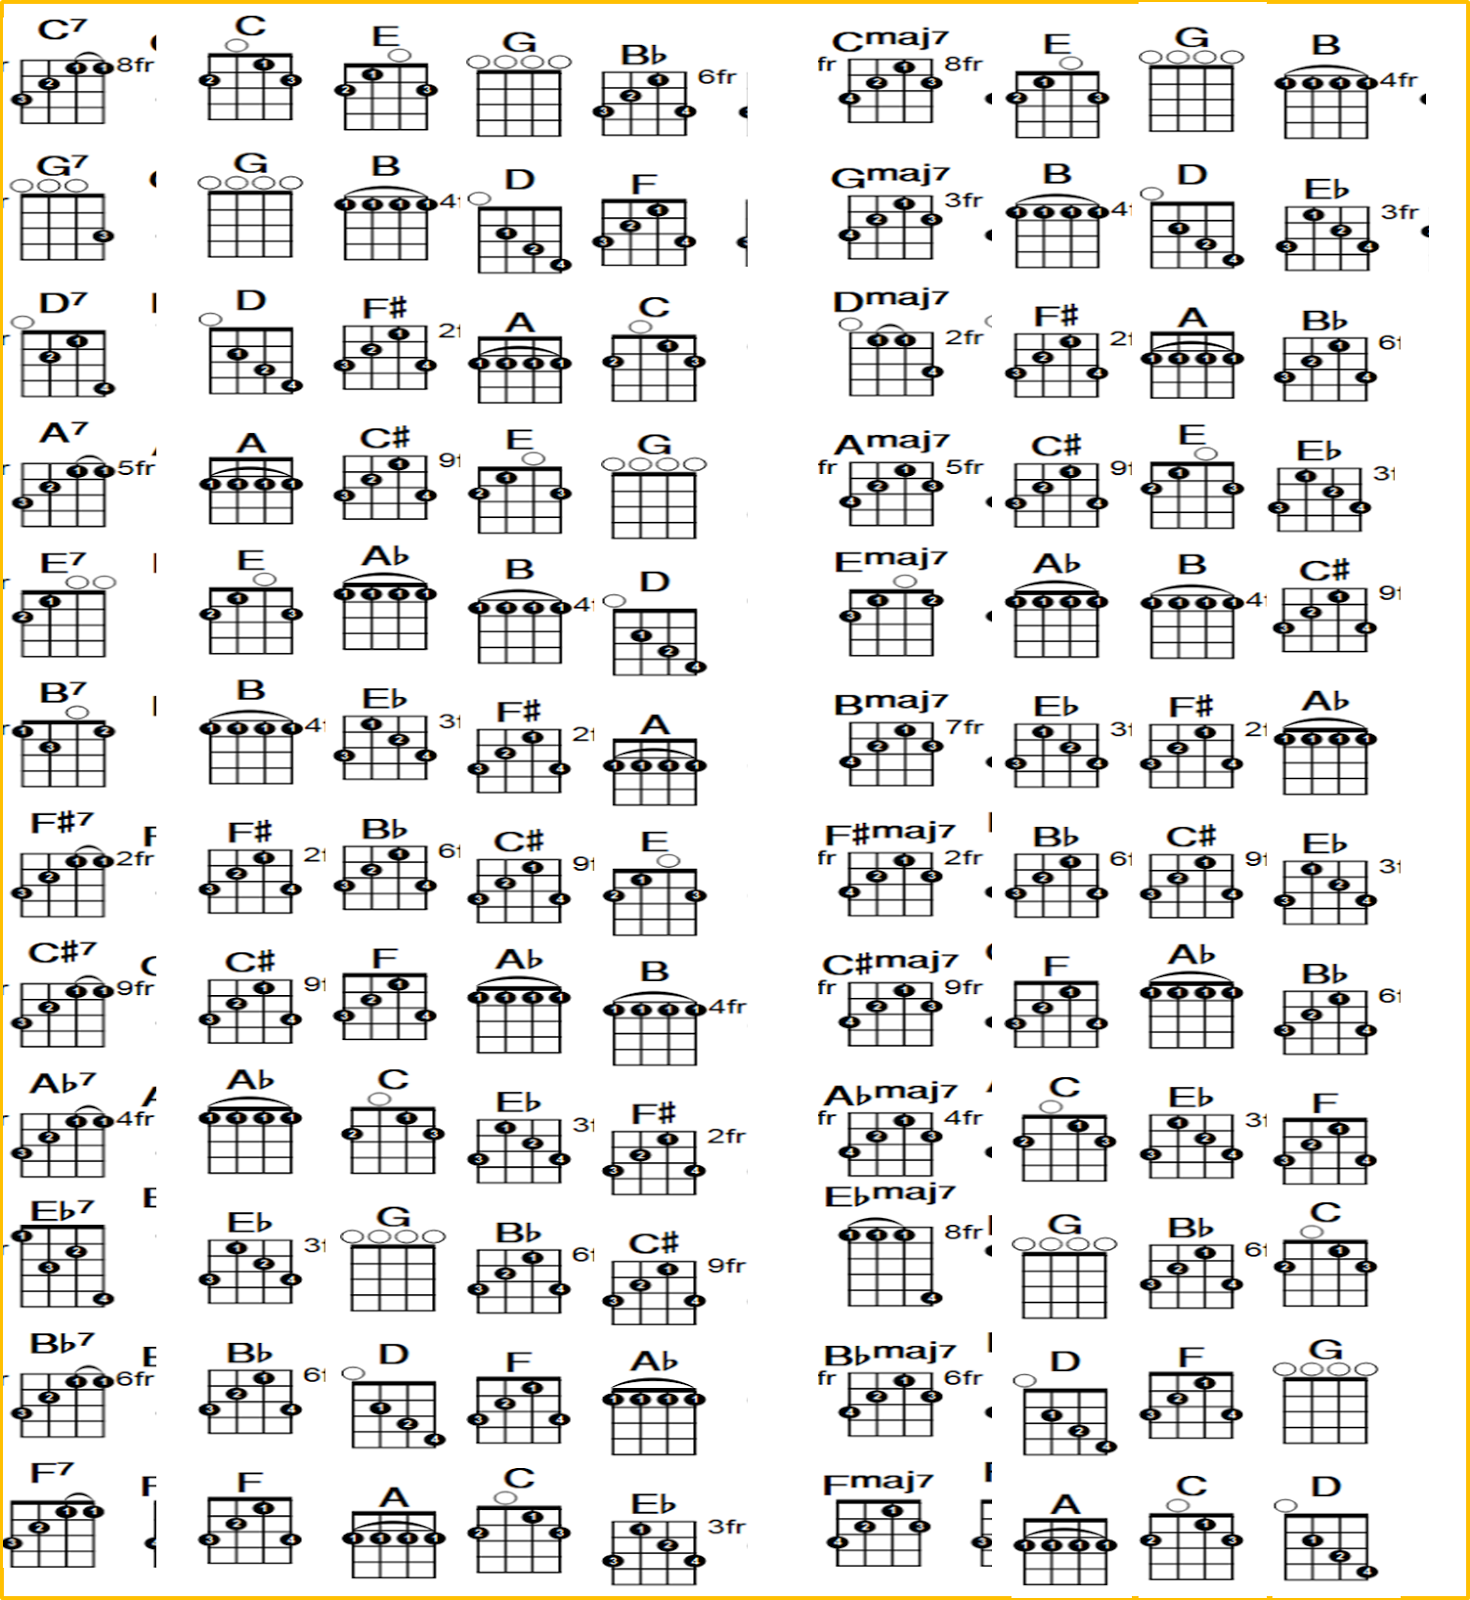 dfs-notes-banjo-chord-chart